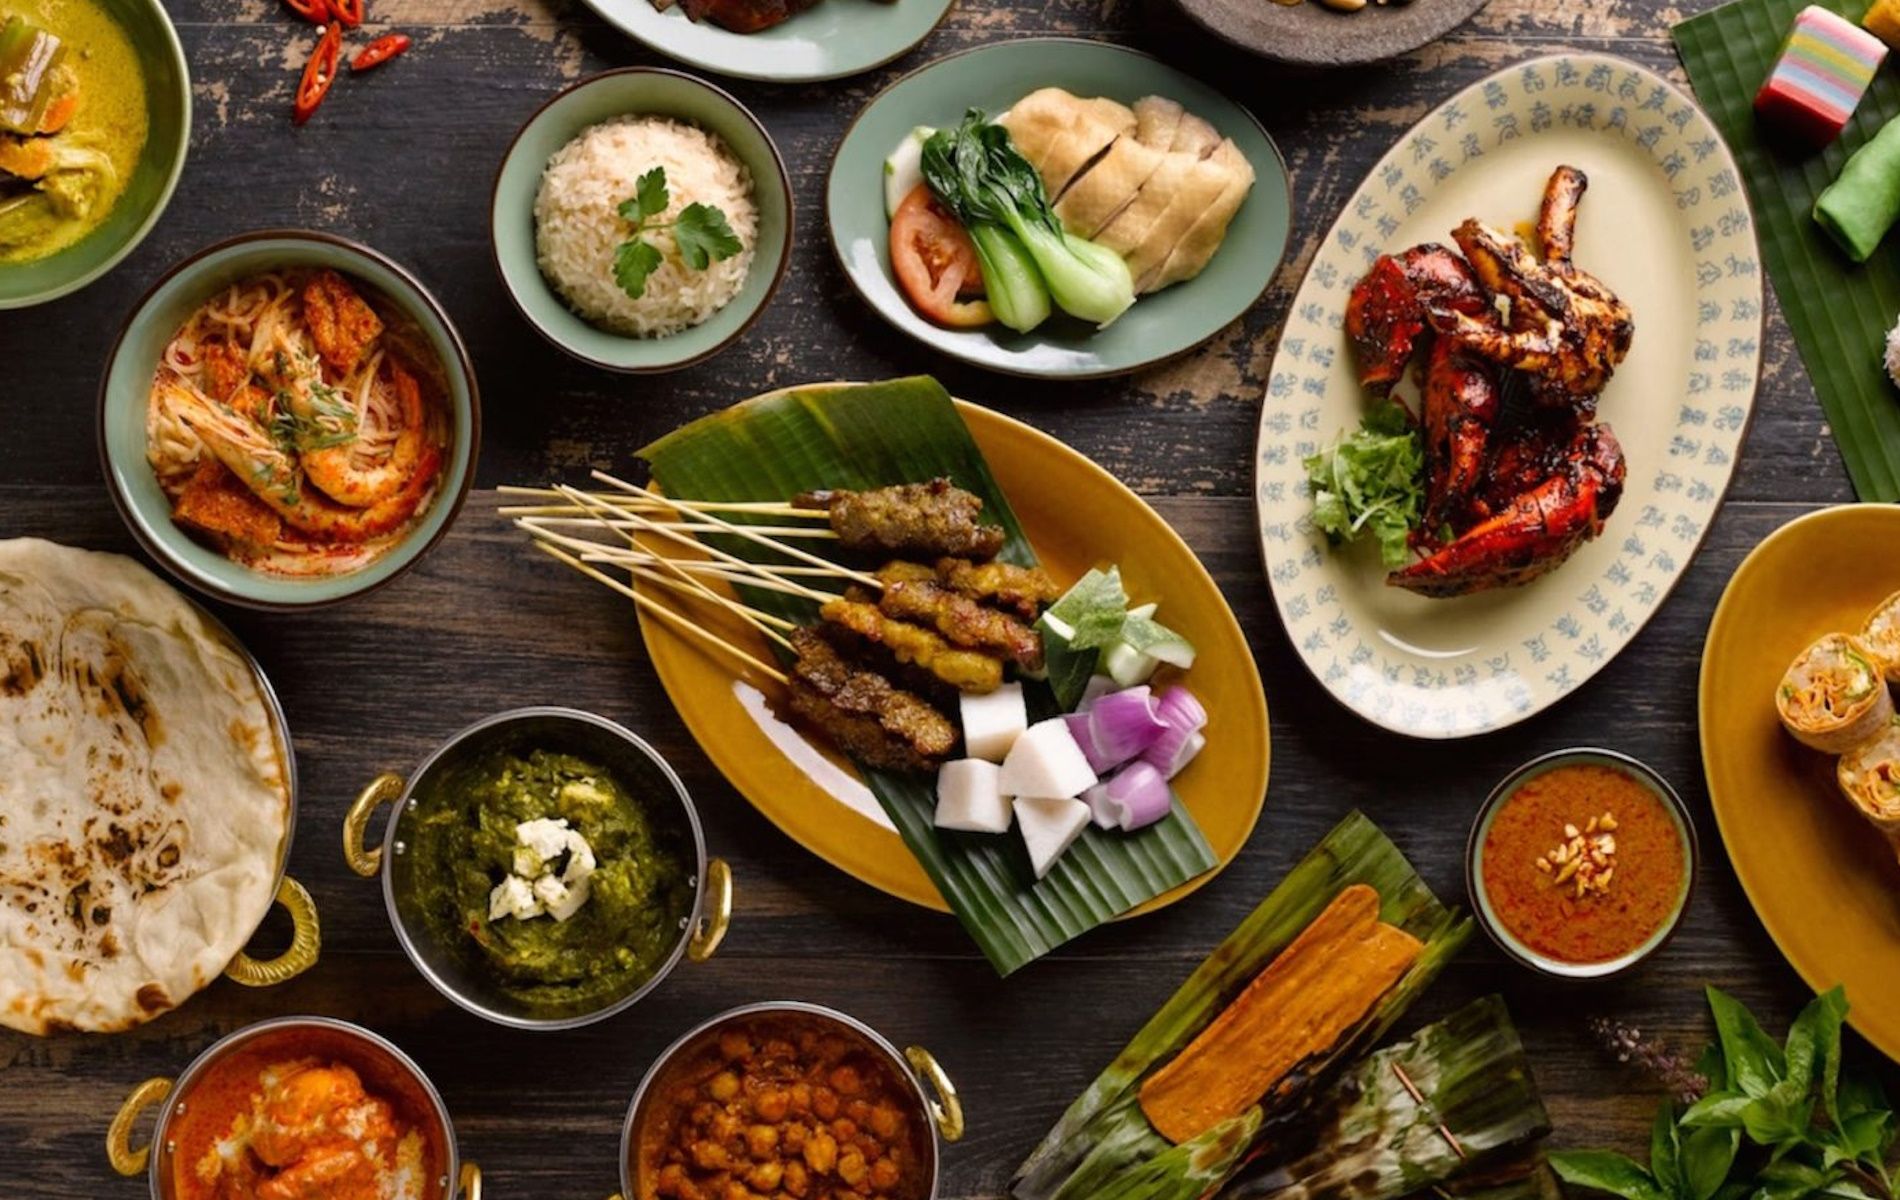 Daftar tempat makan halal dan murah, harga di bawah Rp50.000 di Singapura.